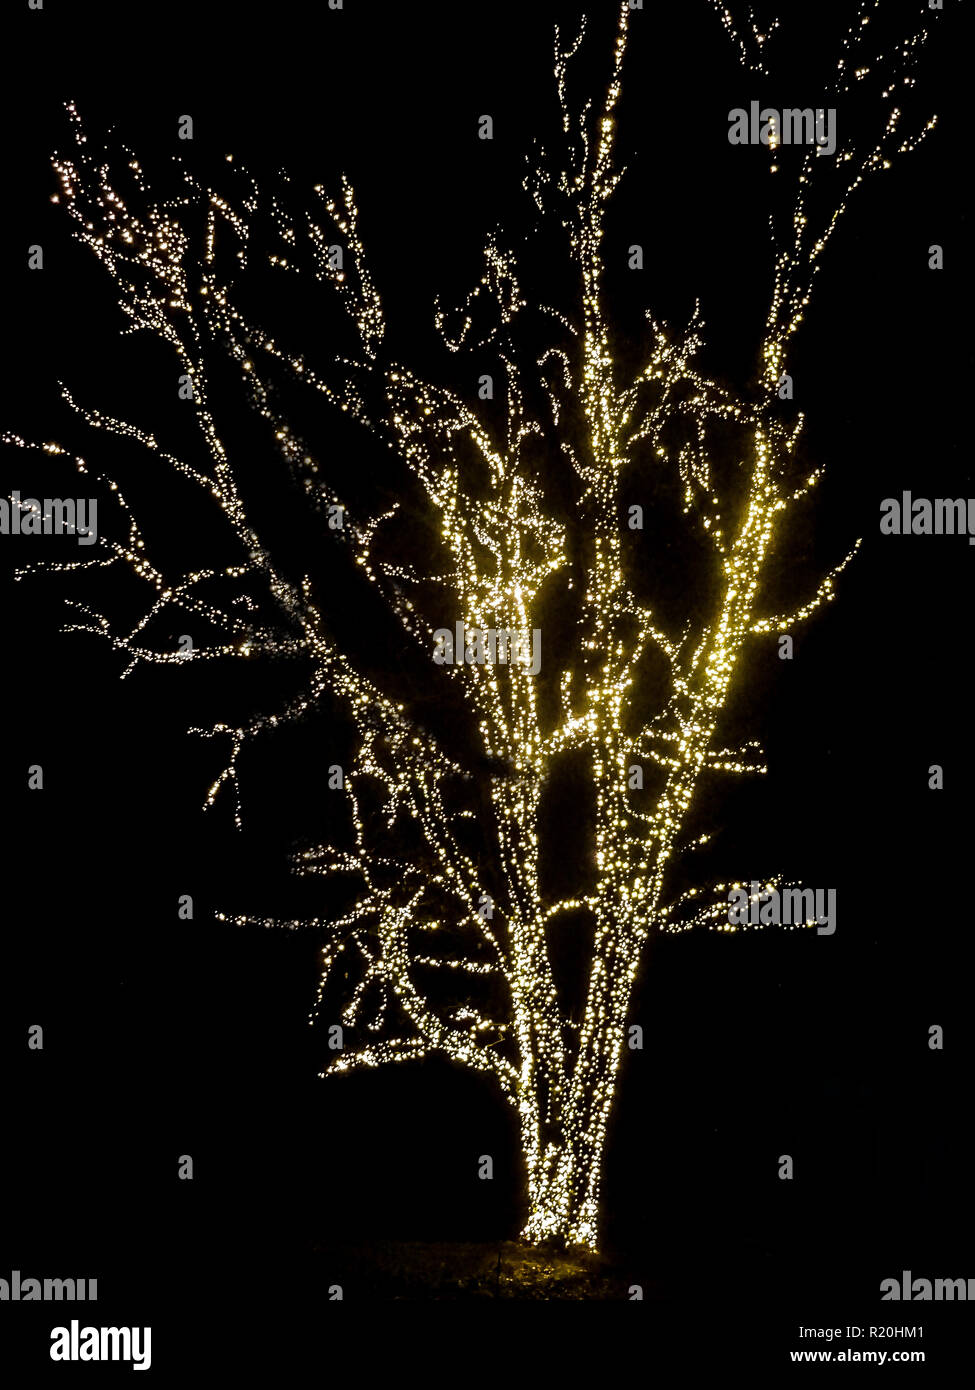 Weiß beleuchtete Baum im Park Weihnachten LED-Leuchten im Freien  Stockfotografie - Alamy